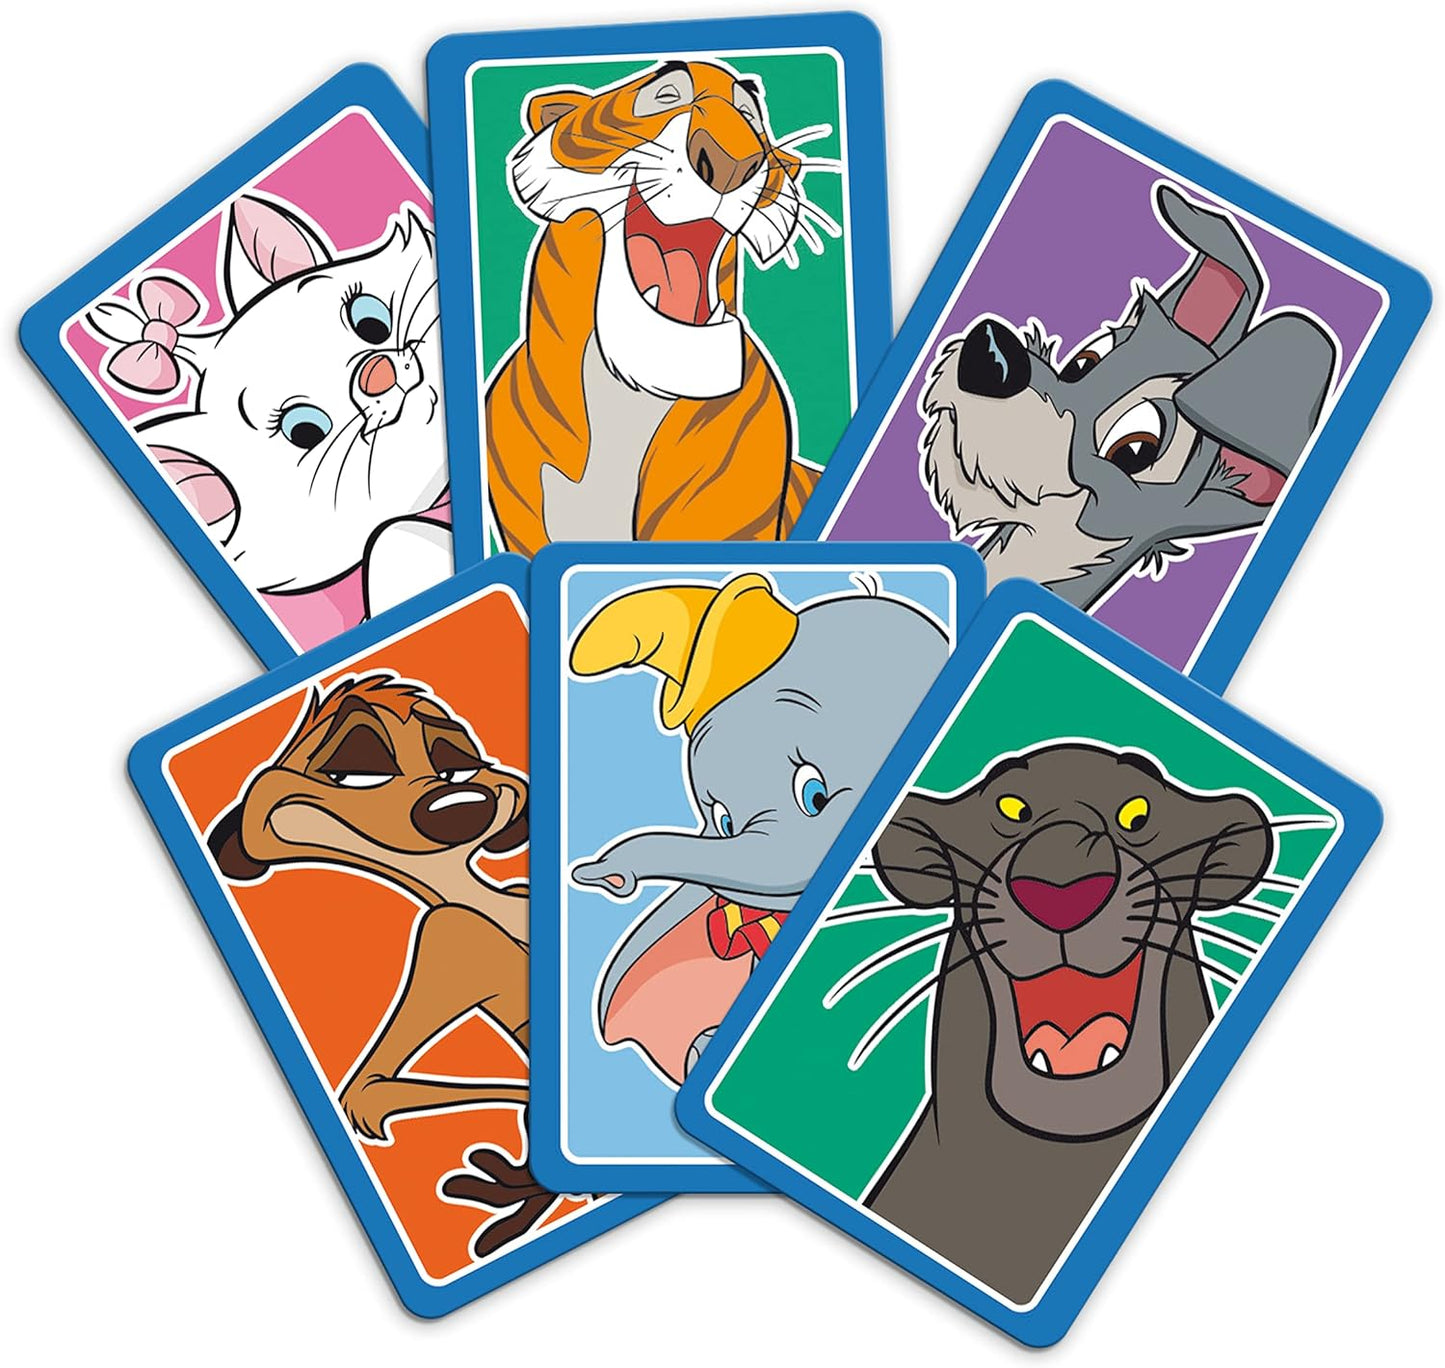 Disney Classics Animals Top Trumps Match - The Crazy Cube Game